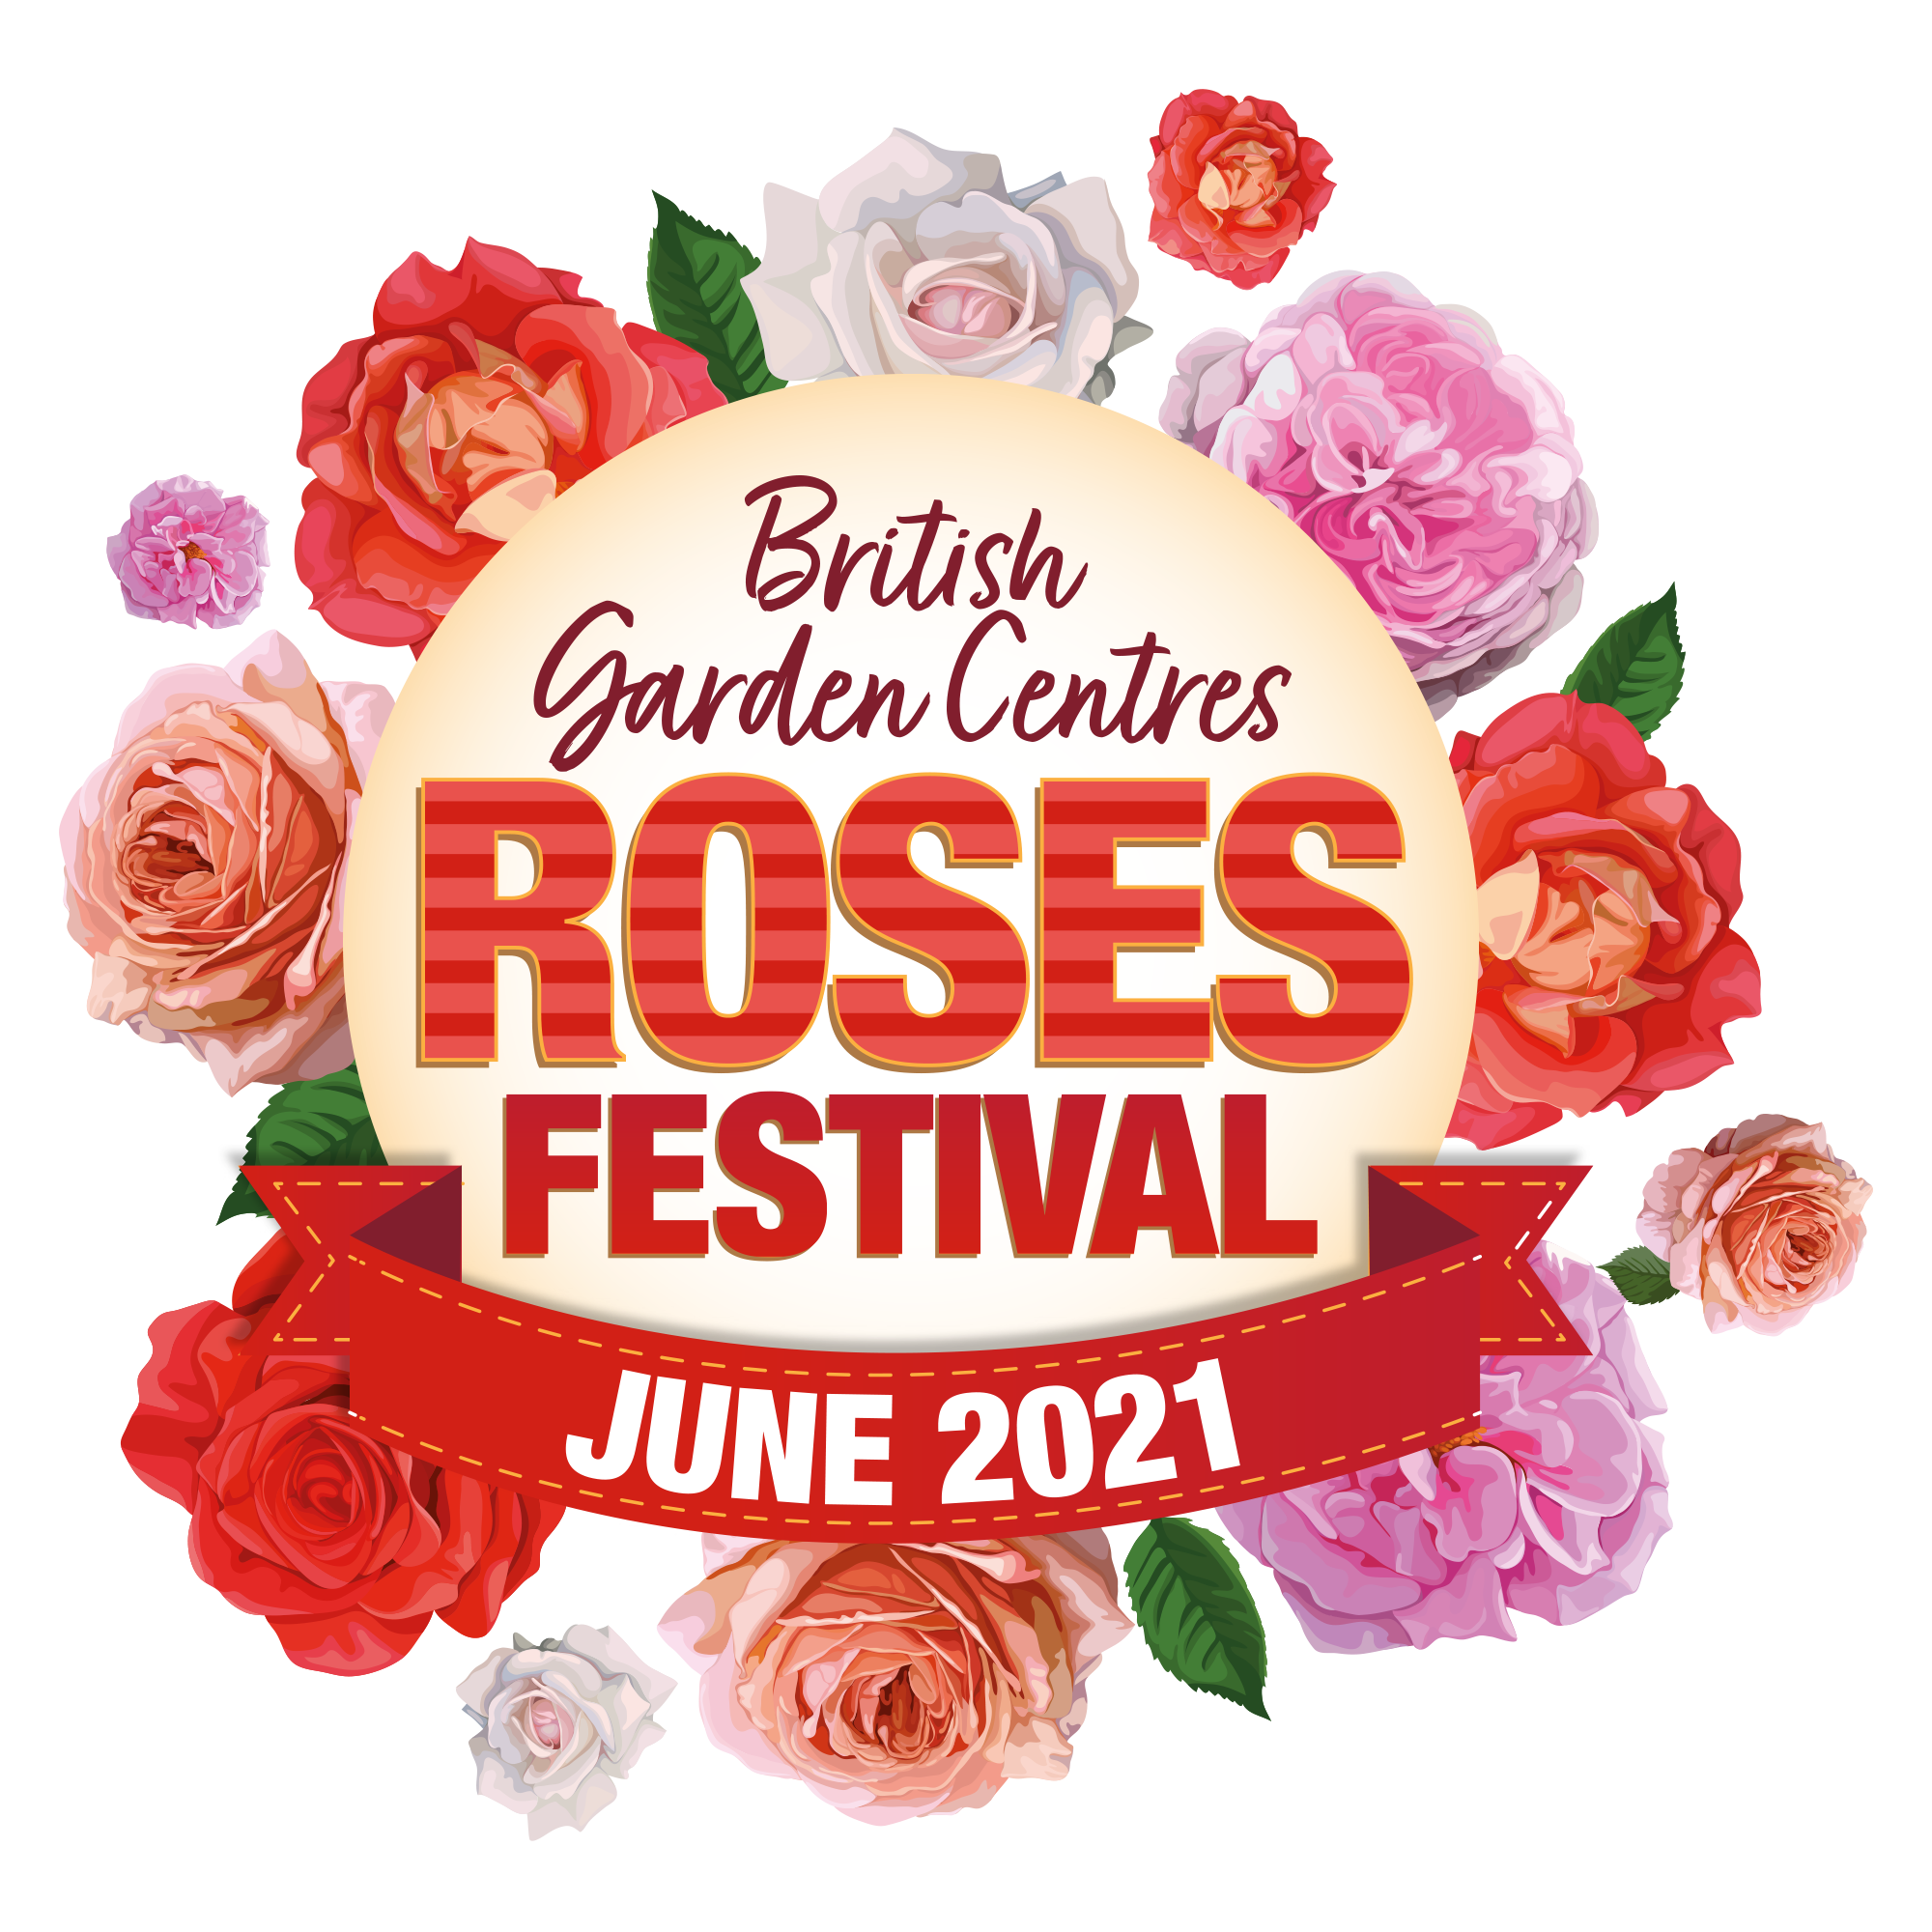 Roses festival BGC 2021